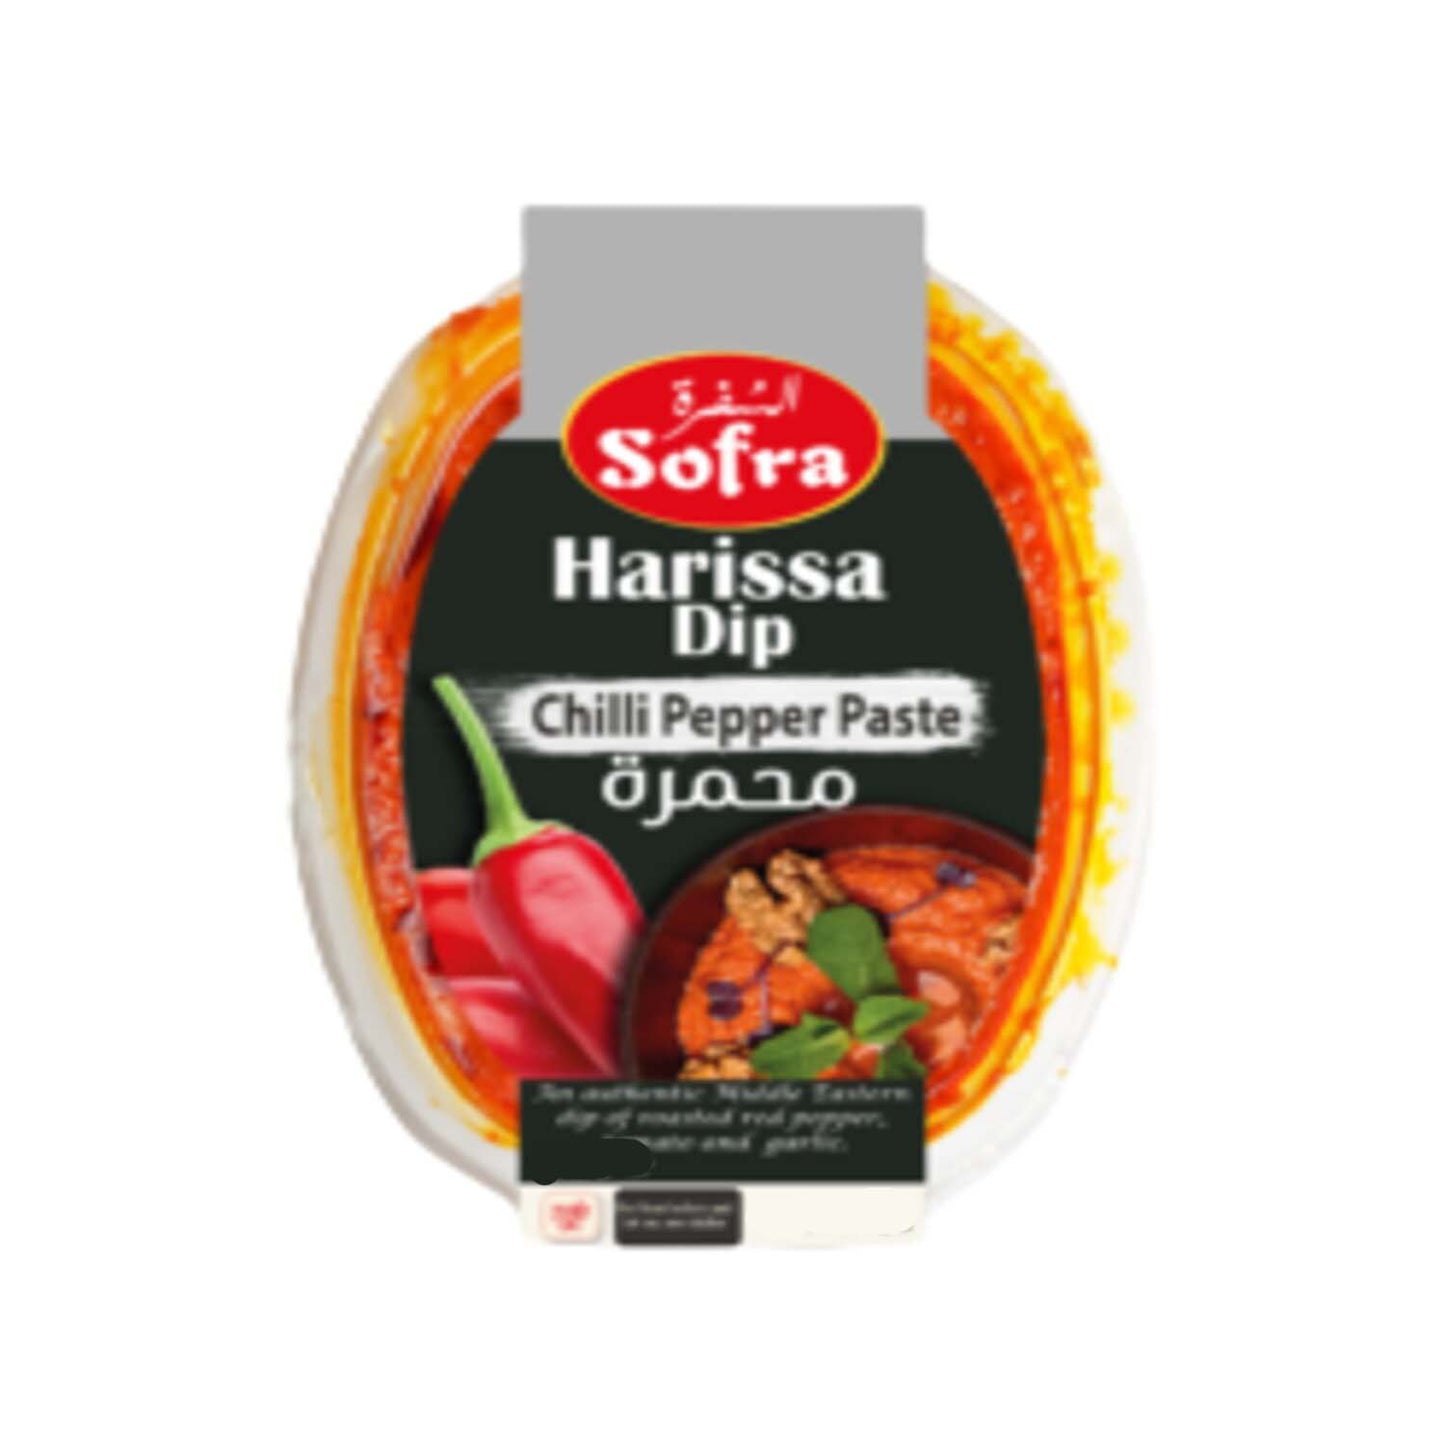 Offer Sofra Harissa Dip Chilli Pepper Paste 240g X 3 pcs